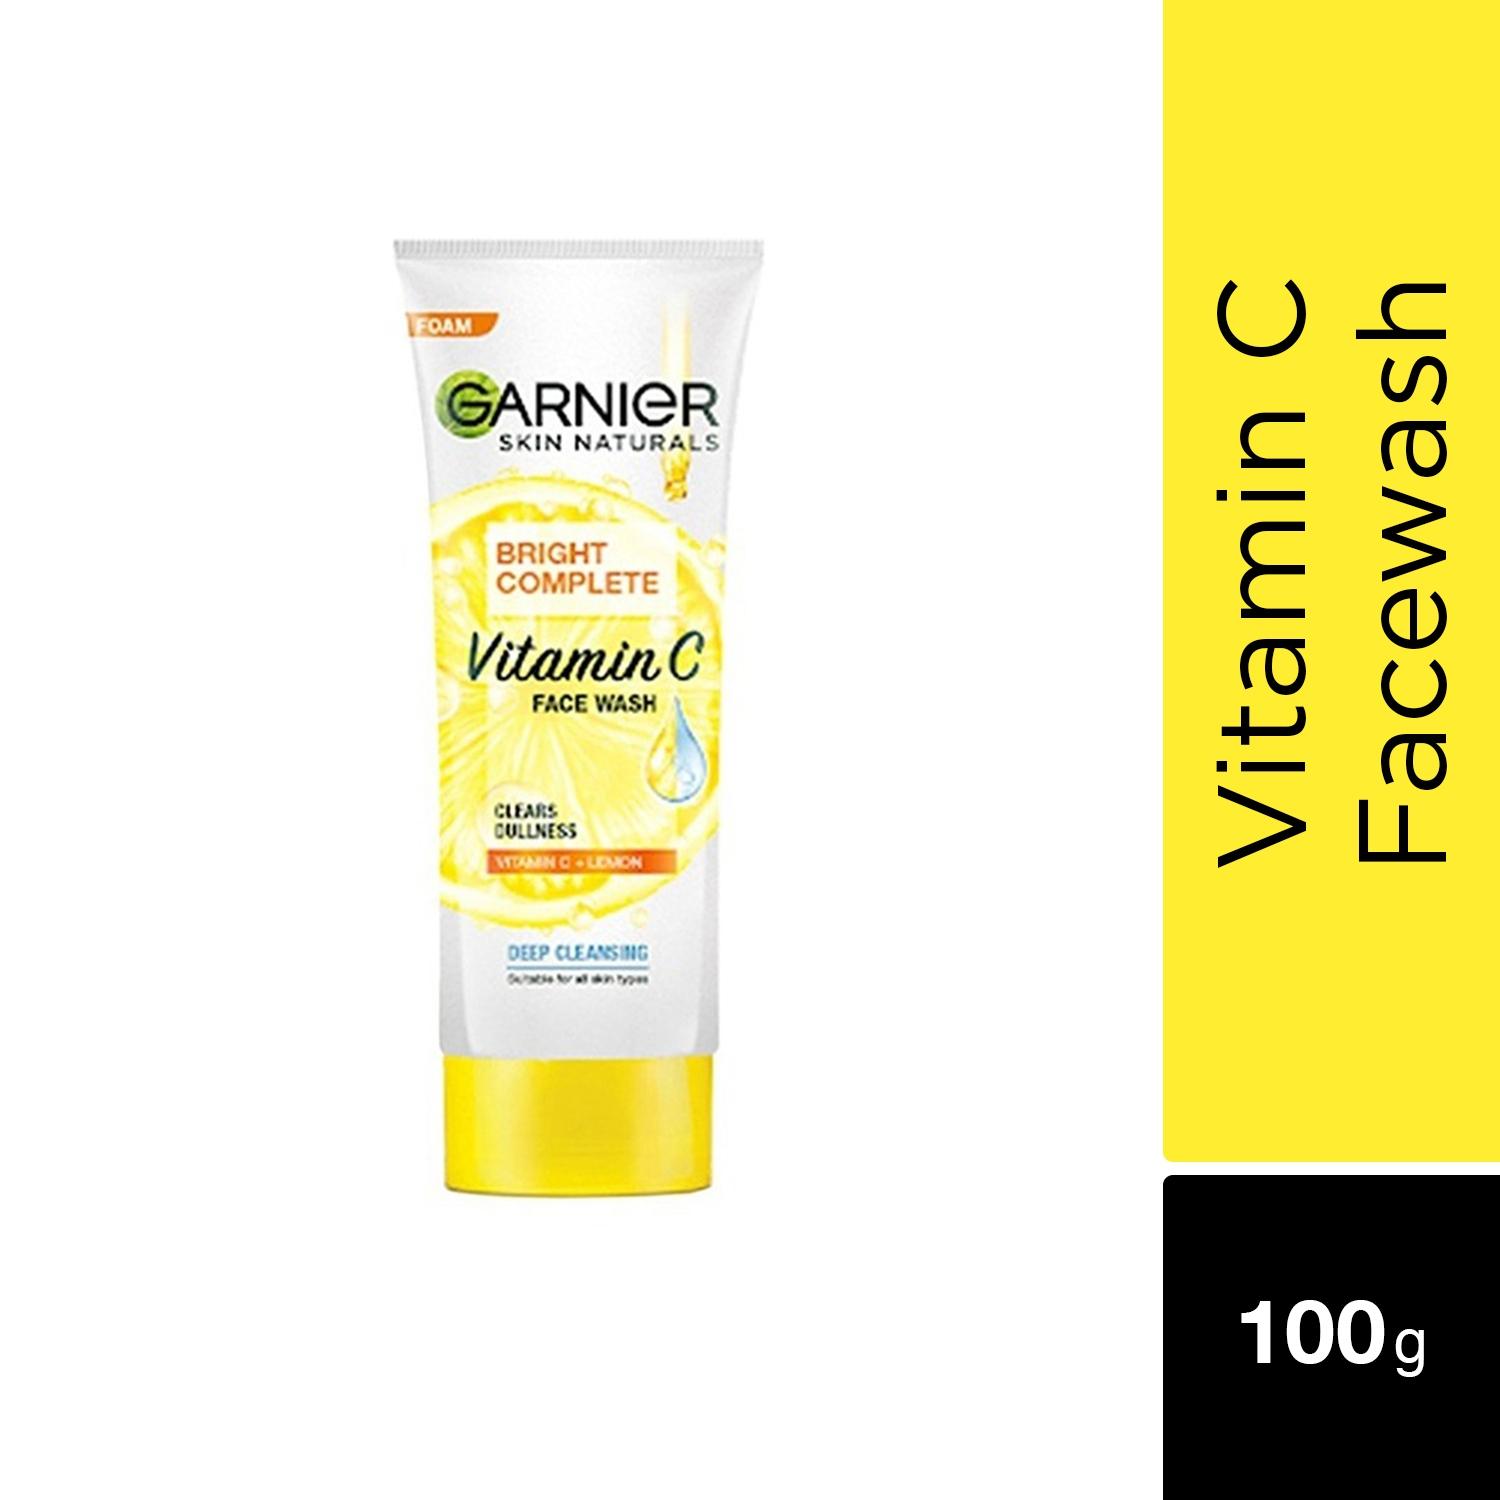 garnier bright complete vitamin c facewash (100g)